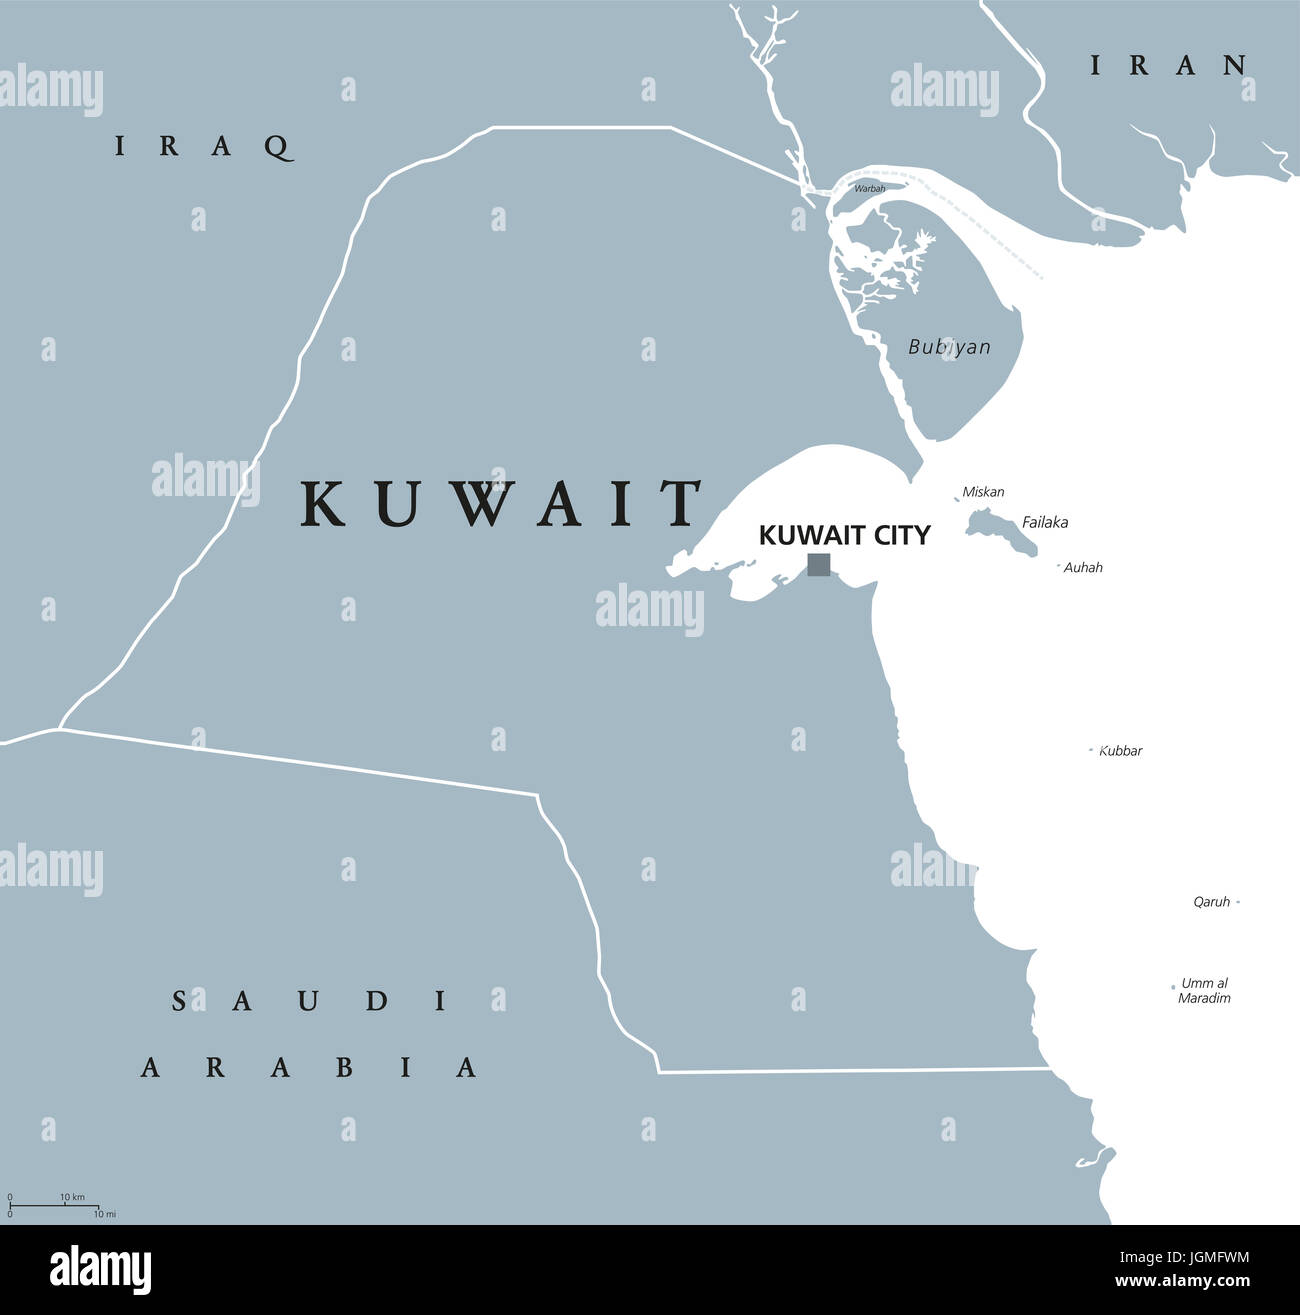 Kuwait politische Karte mit Hauptstadt Kuwait-Stadt. Staat und arabischen Land im Nahen Osten, an der Spitze des Persischen Golfs. Graue Abbildung. Stockfoto